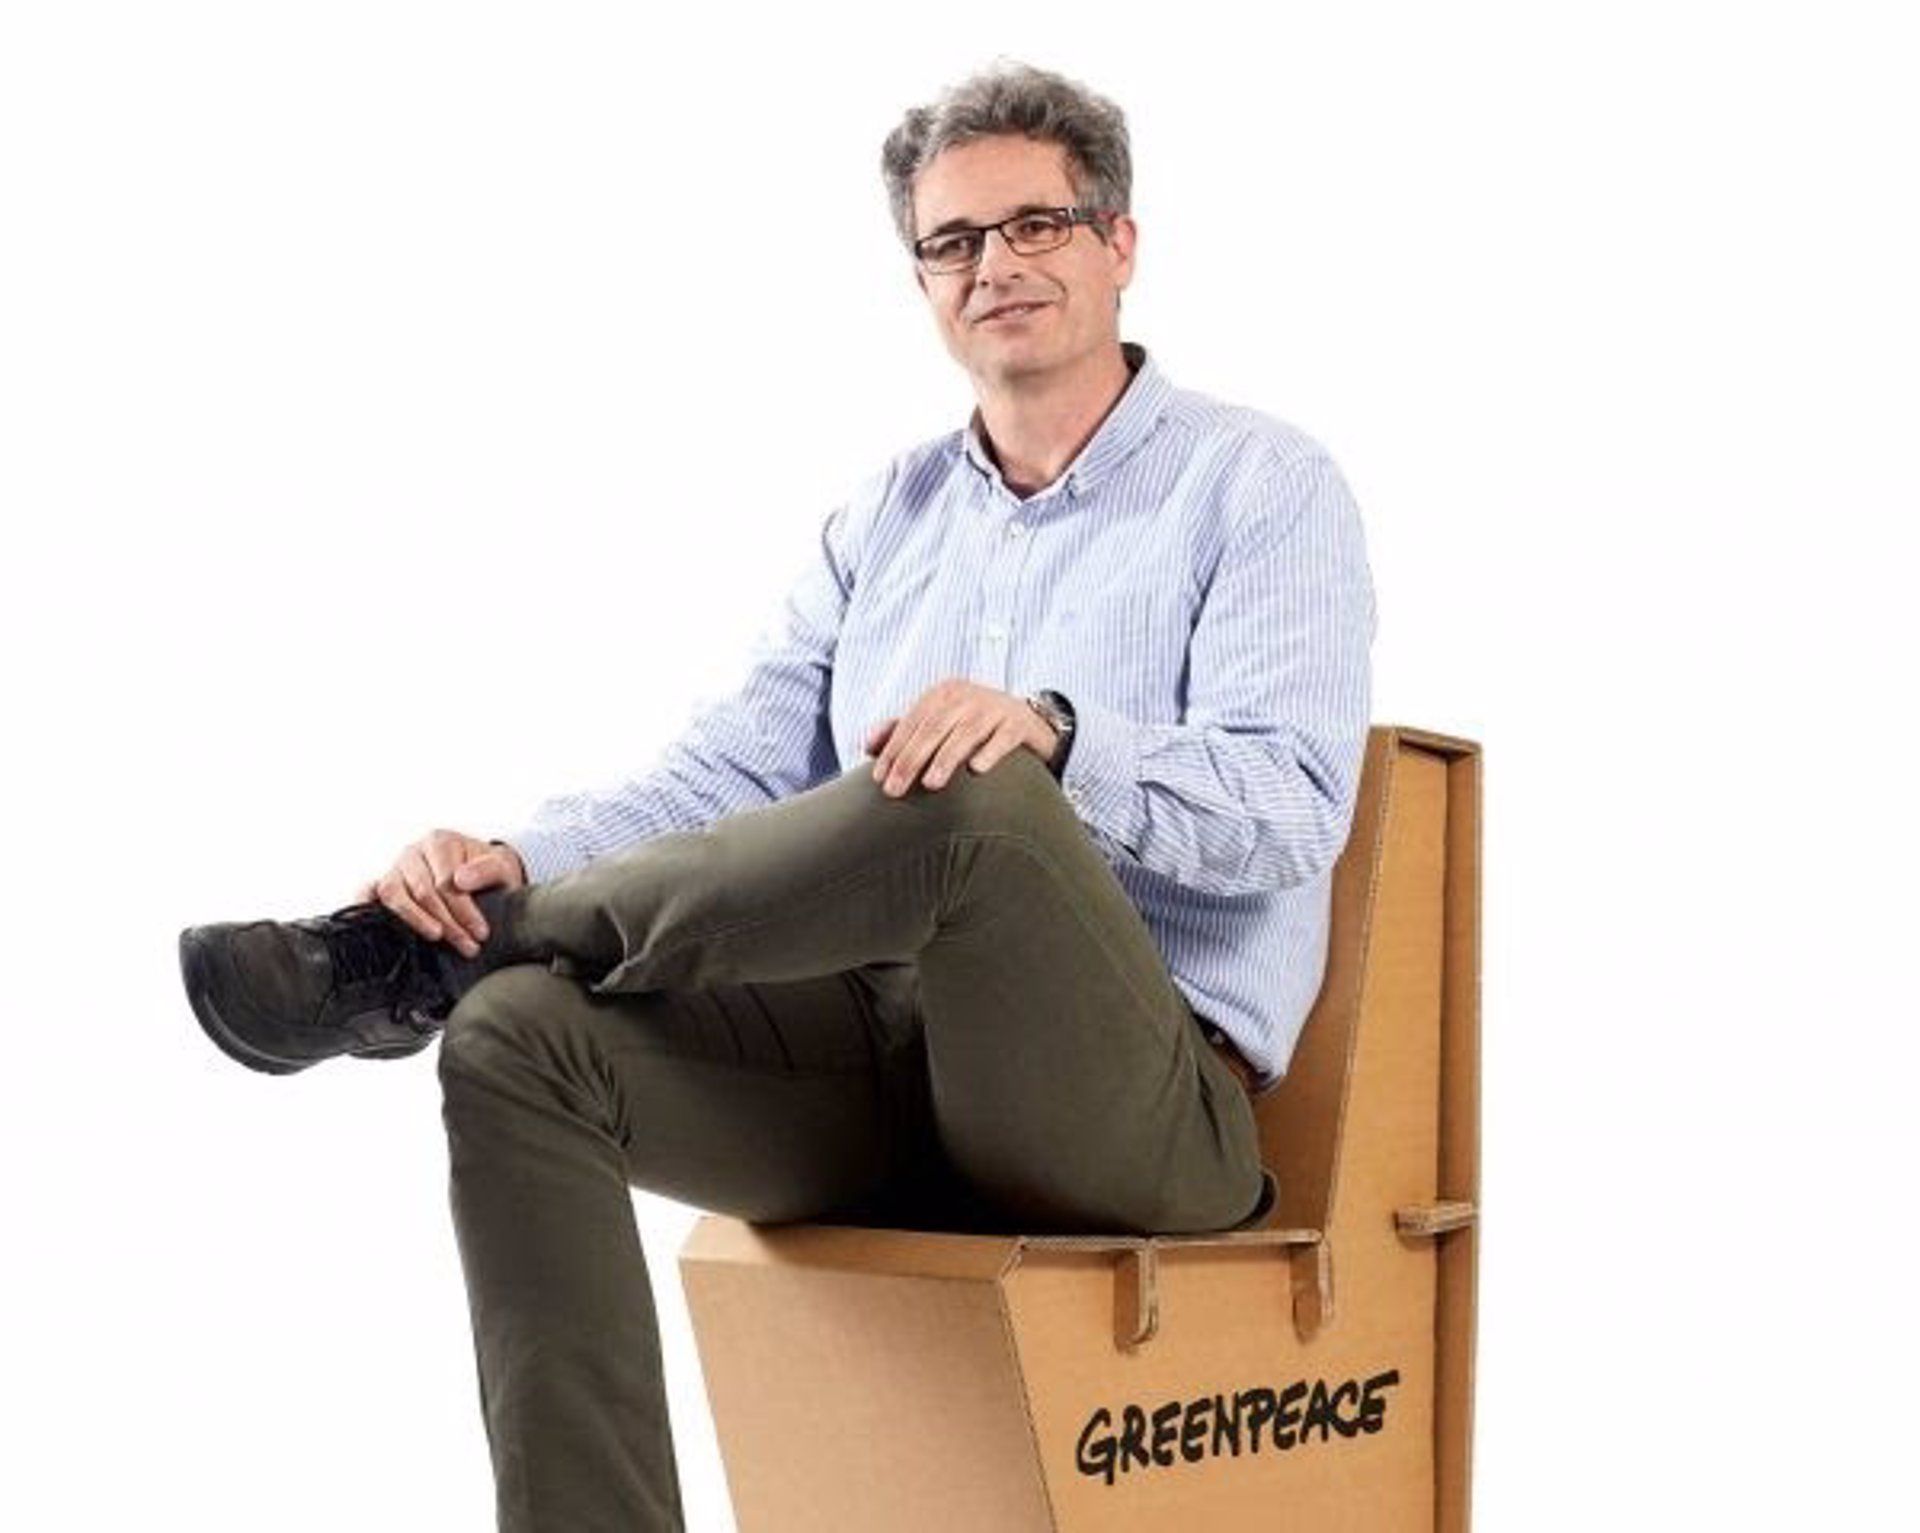 El director de Greenpeace, Mario Rodríguez, ha decidido dejar la dirección de la organización / Foto: EP